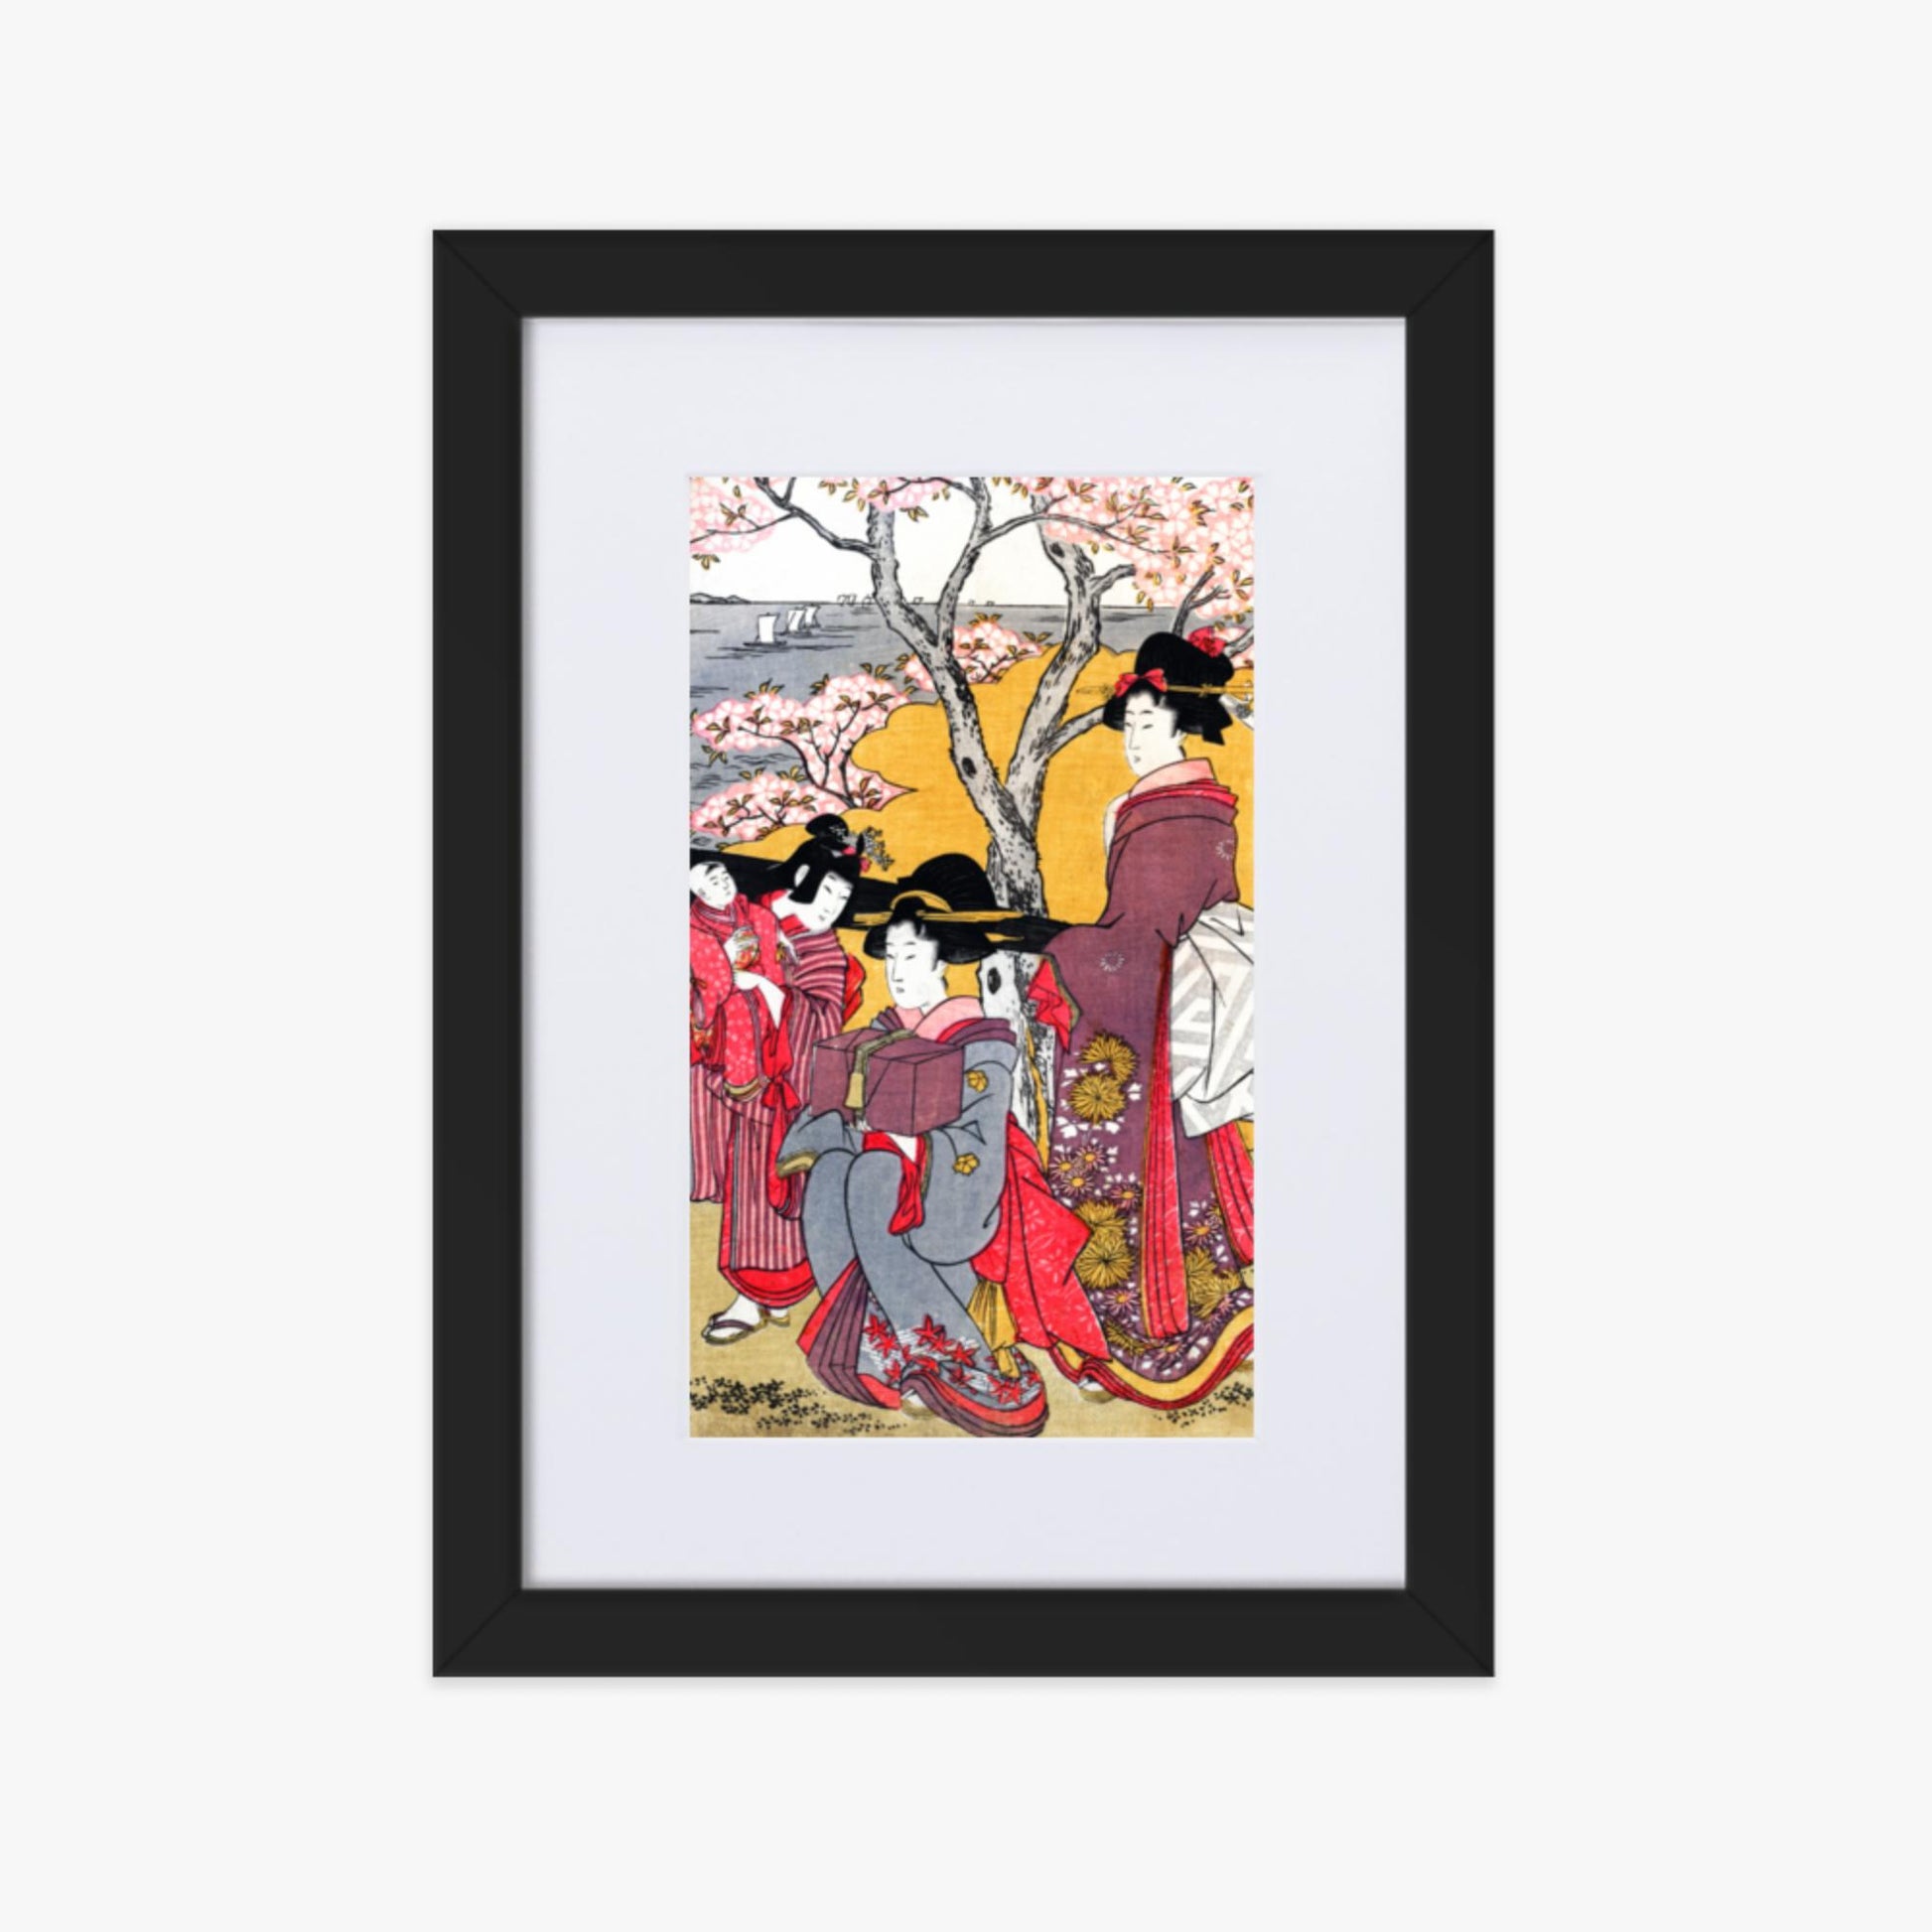 Kitagawa Utamaro - Cherry-viewing at Gotenyama 21x30 cm Poster With Black Frame